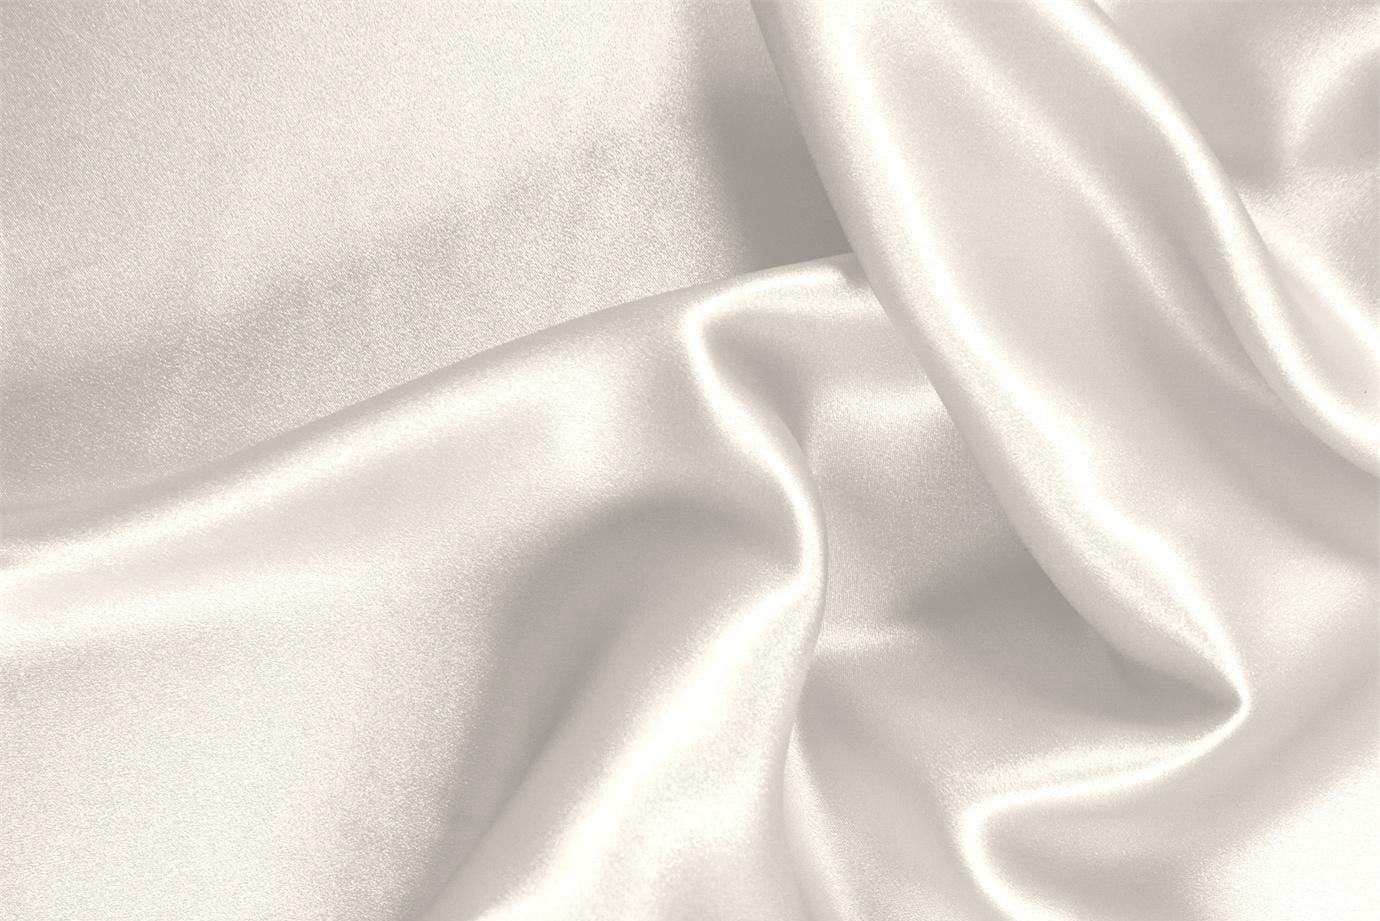 Tessuto Raso Stretch Bianco Avorio in Seta, Stretch per abbigliamento